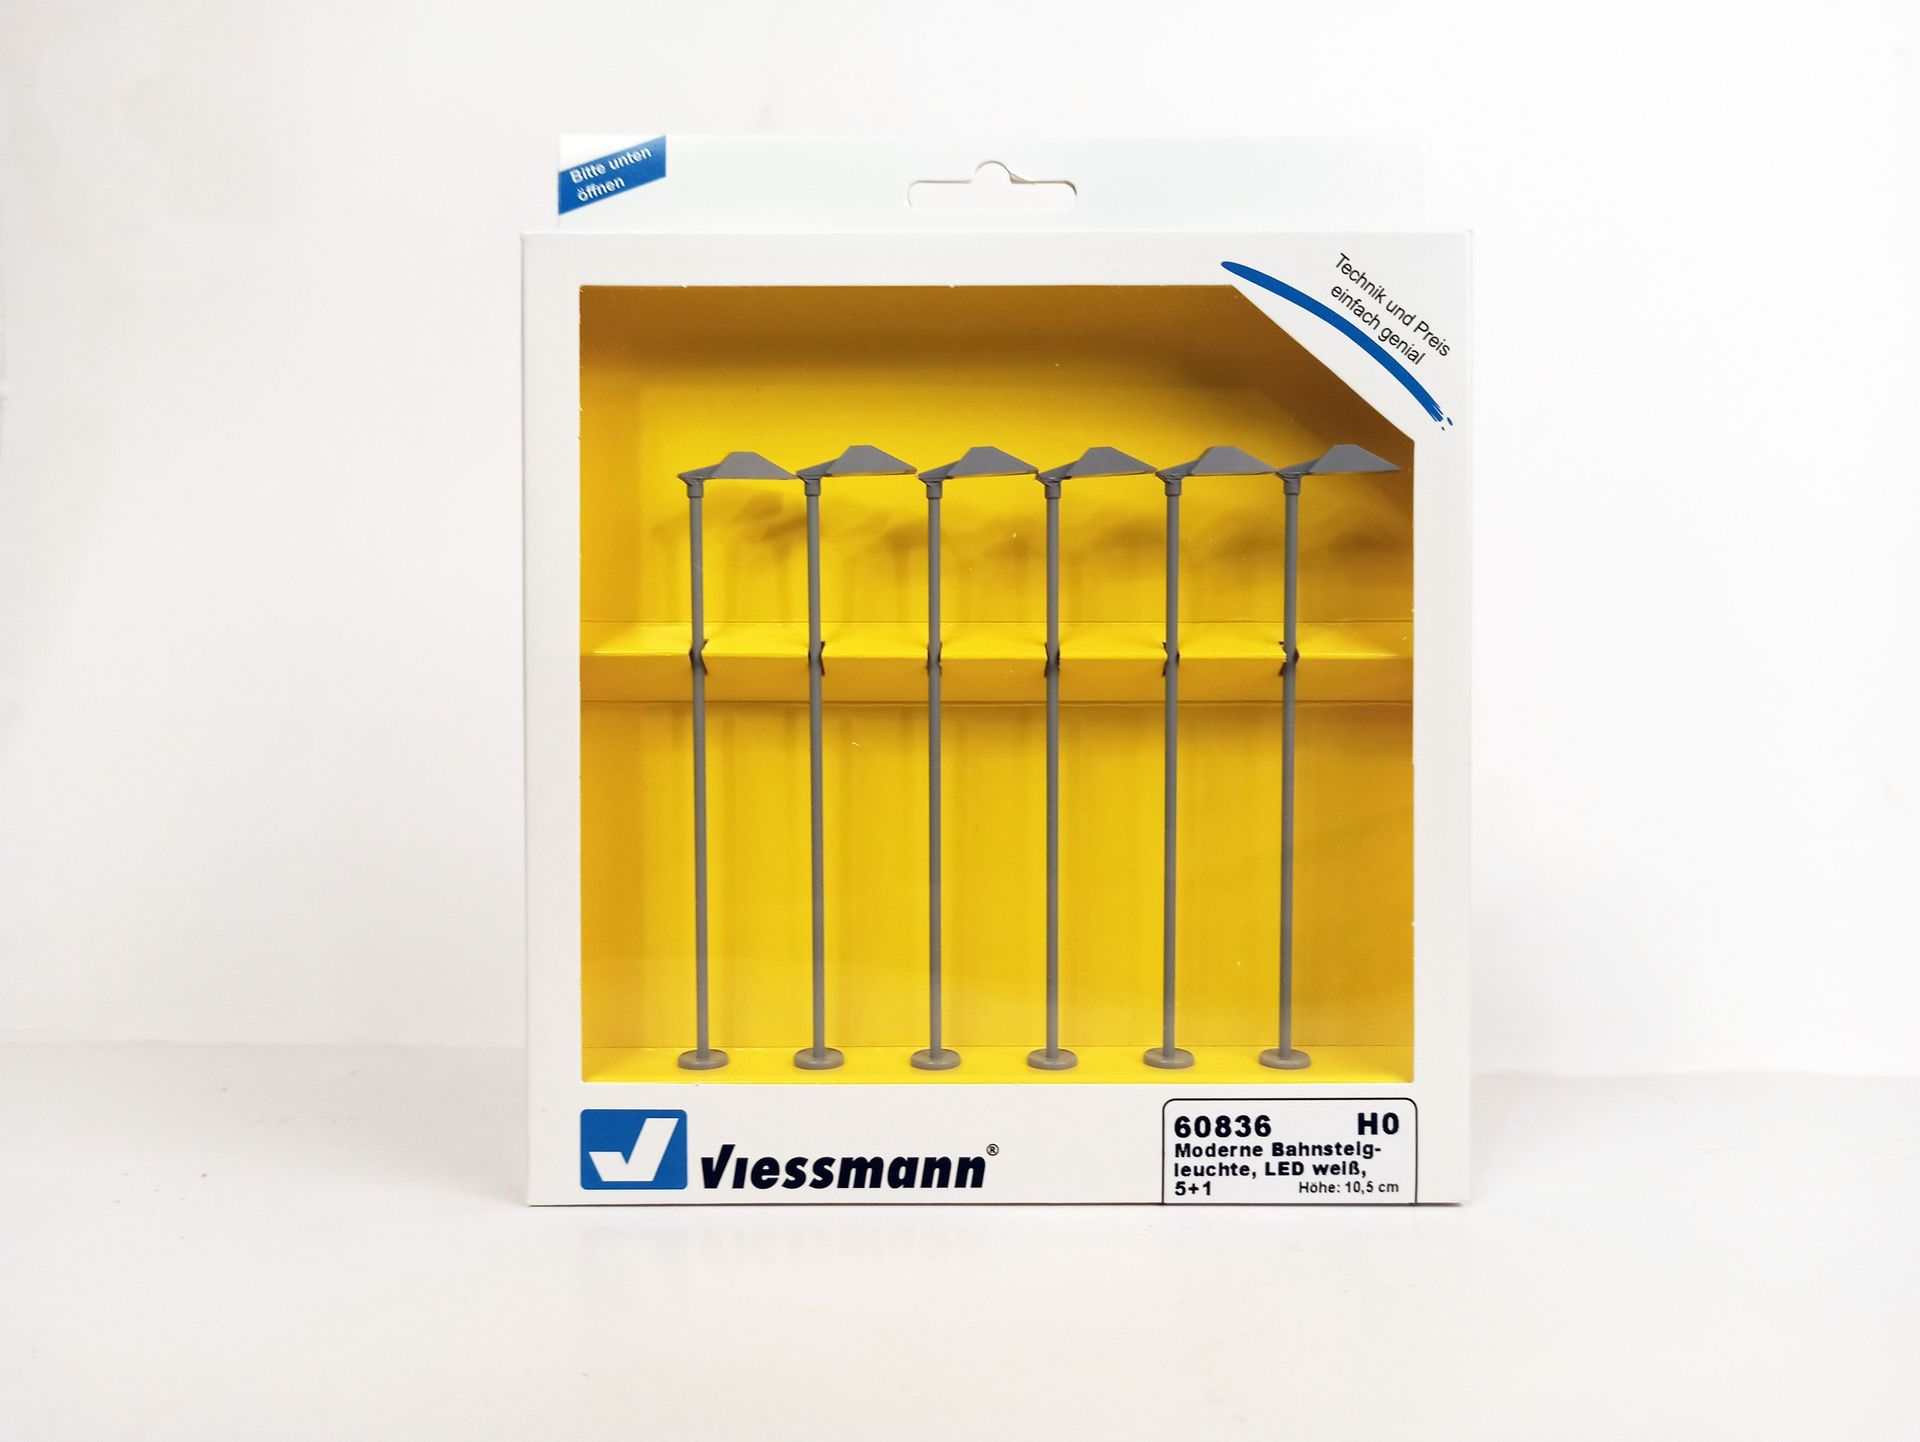 Viessmann 6083-6 - Moderne Bahnsteigleuchte LED weiß 5 +1 Stück H0 1:87